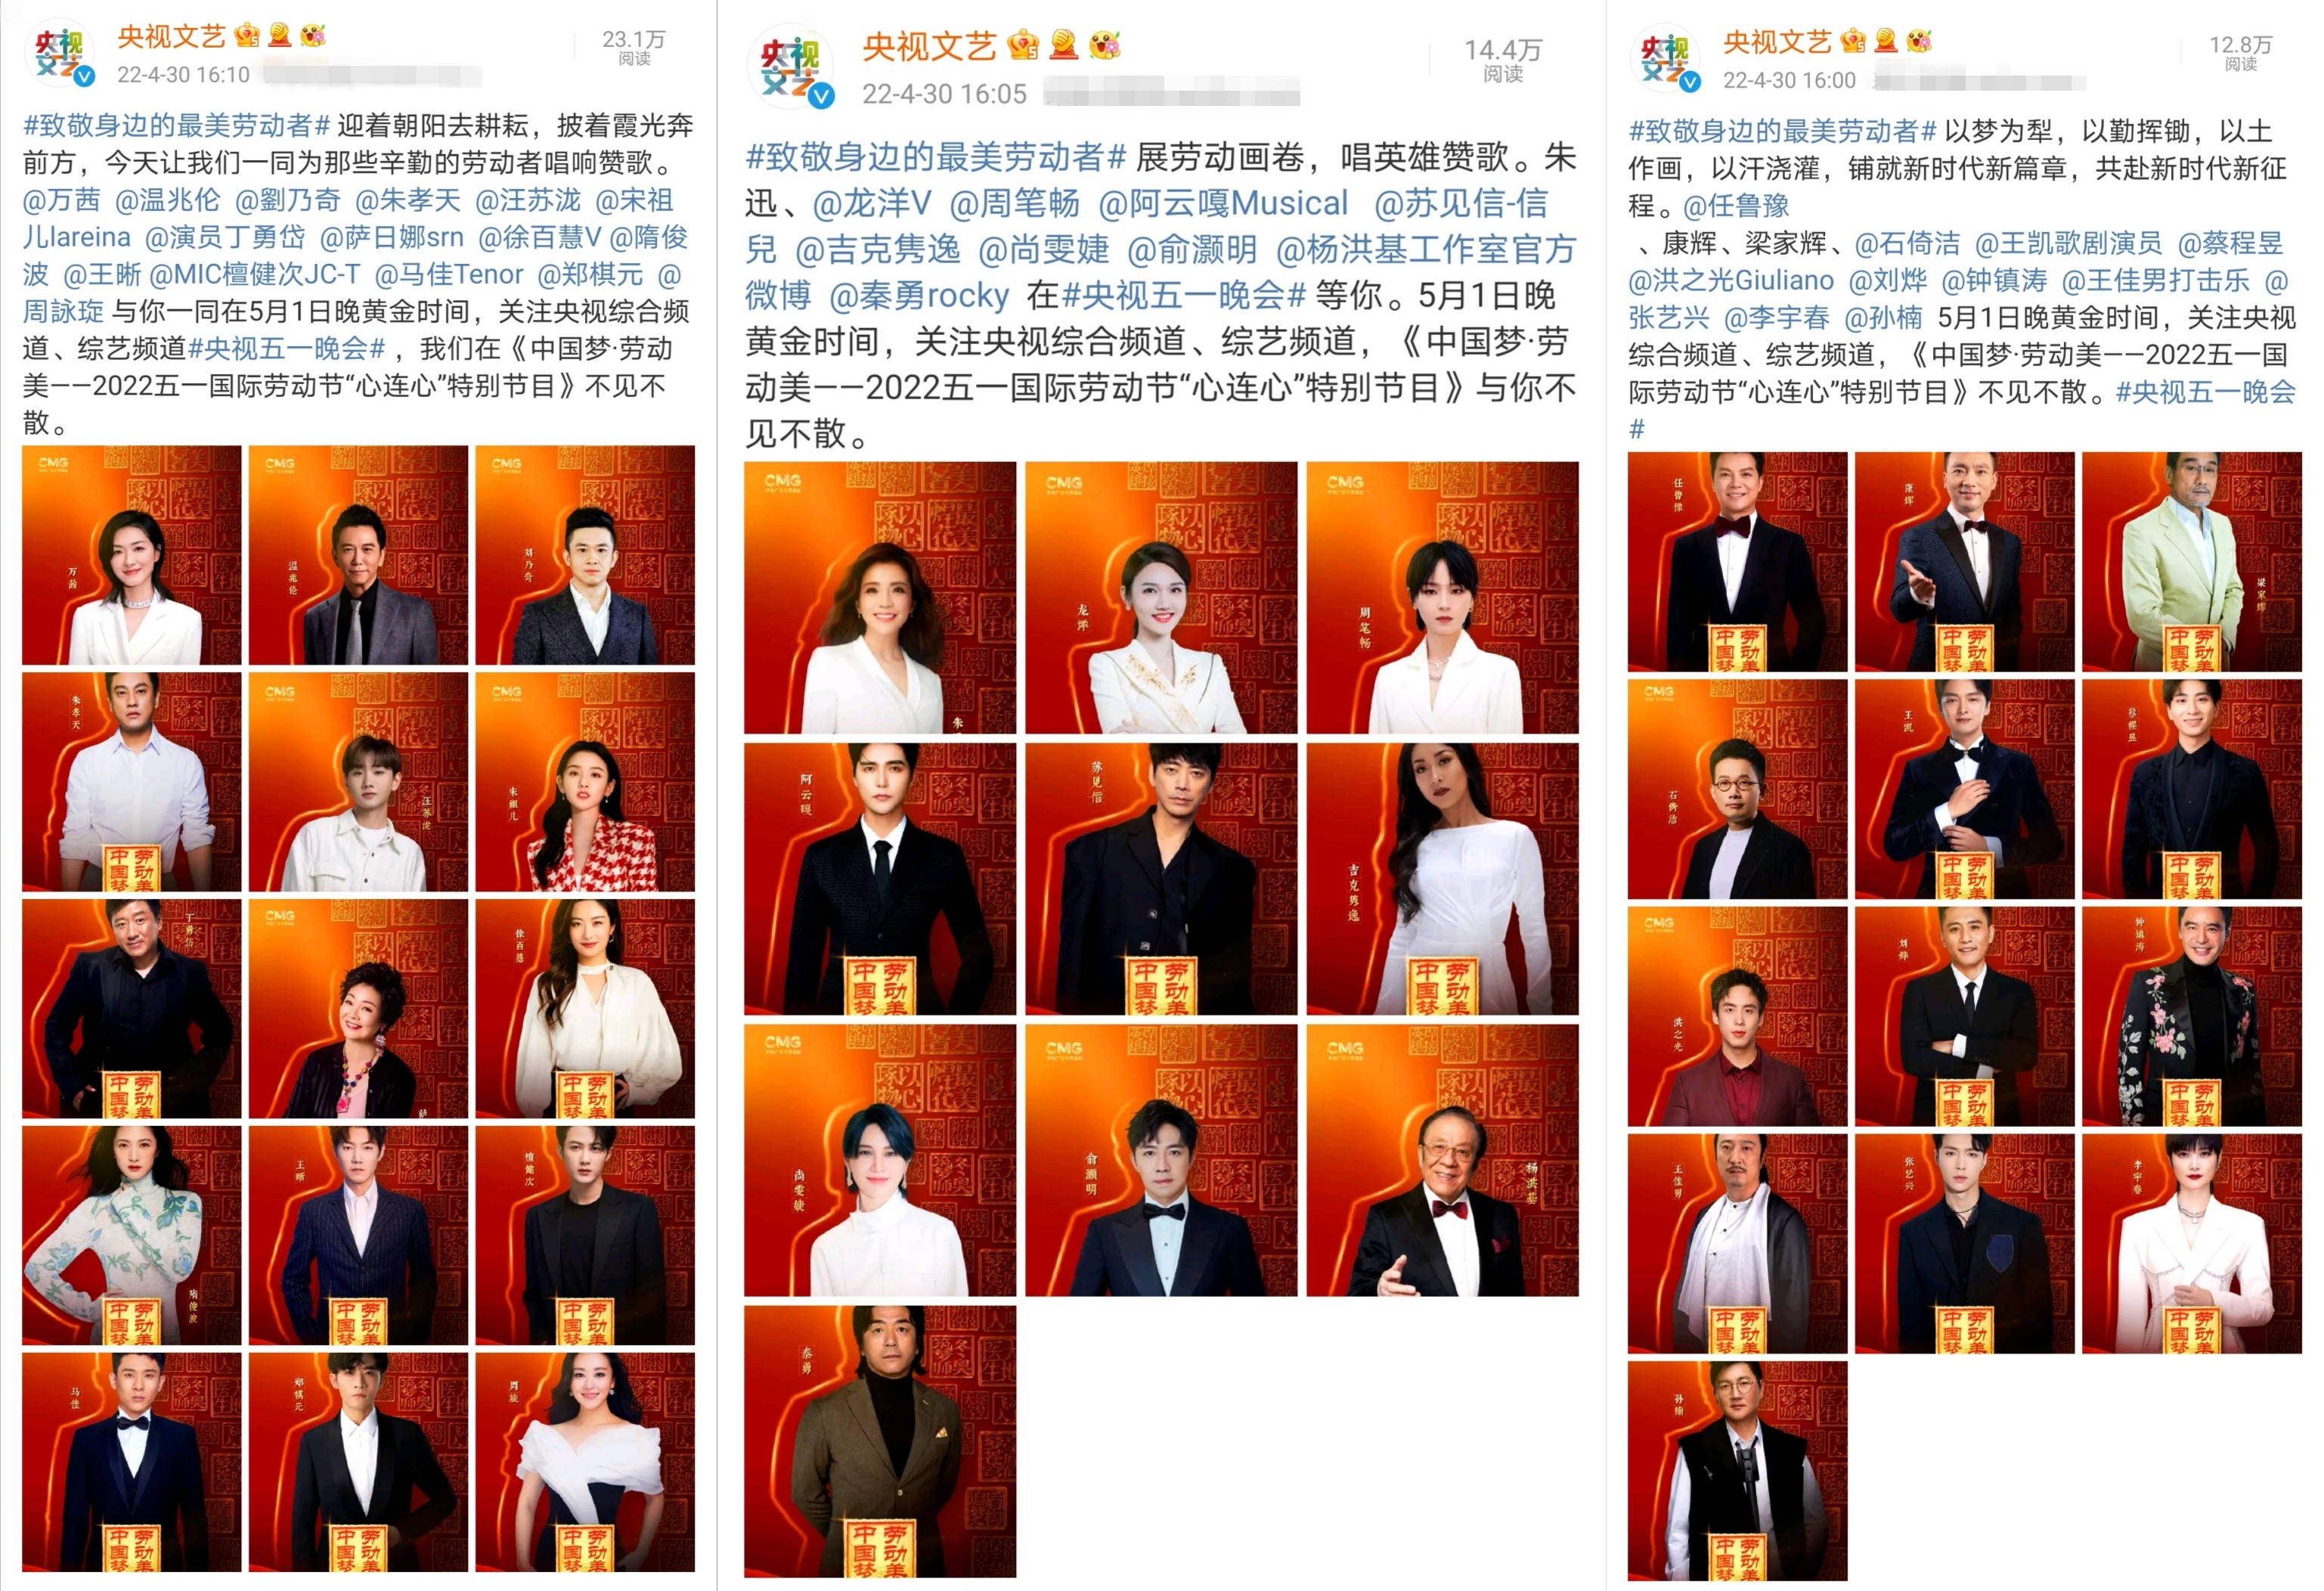 《中国梦·劳动美》特别节目嘉宾海报释出